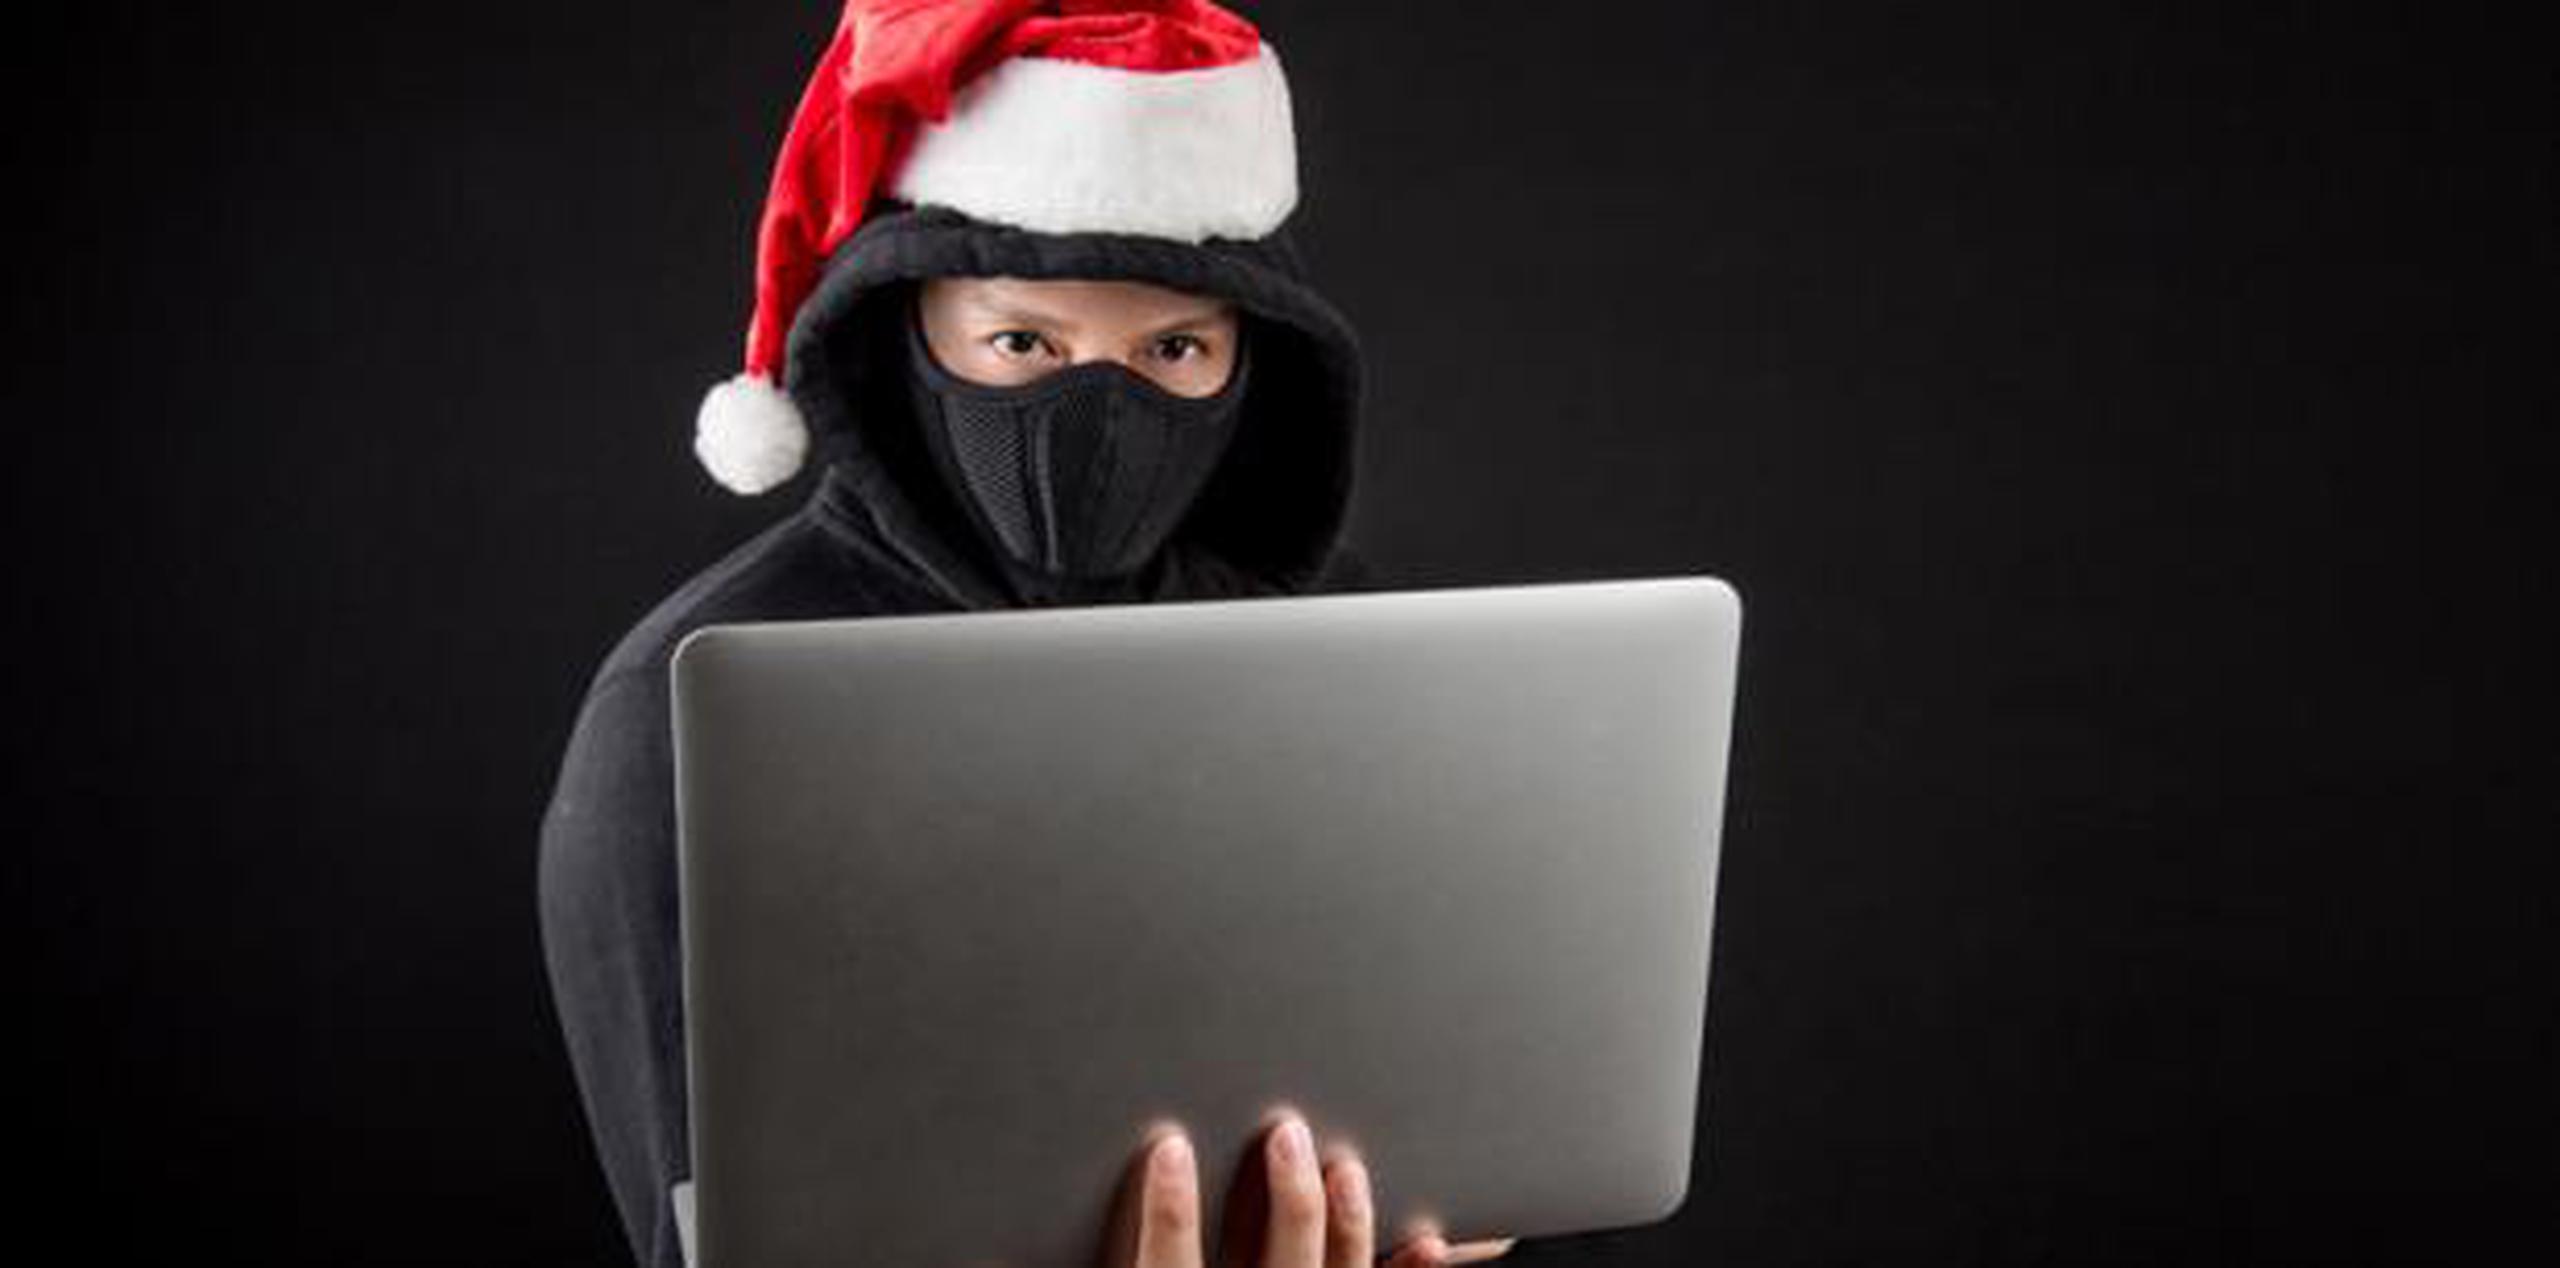 Aquí hay siete pasos para ayudar con la seguridad en línea al momento de hacer compras navideñas. (archivo)